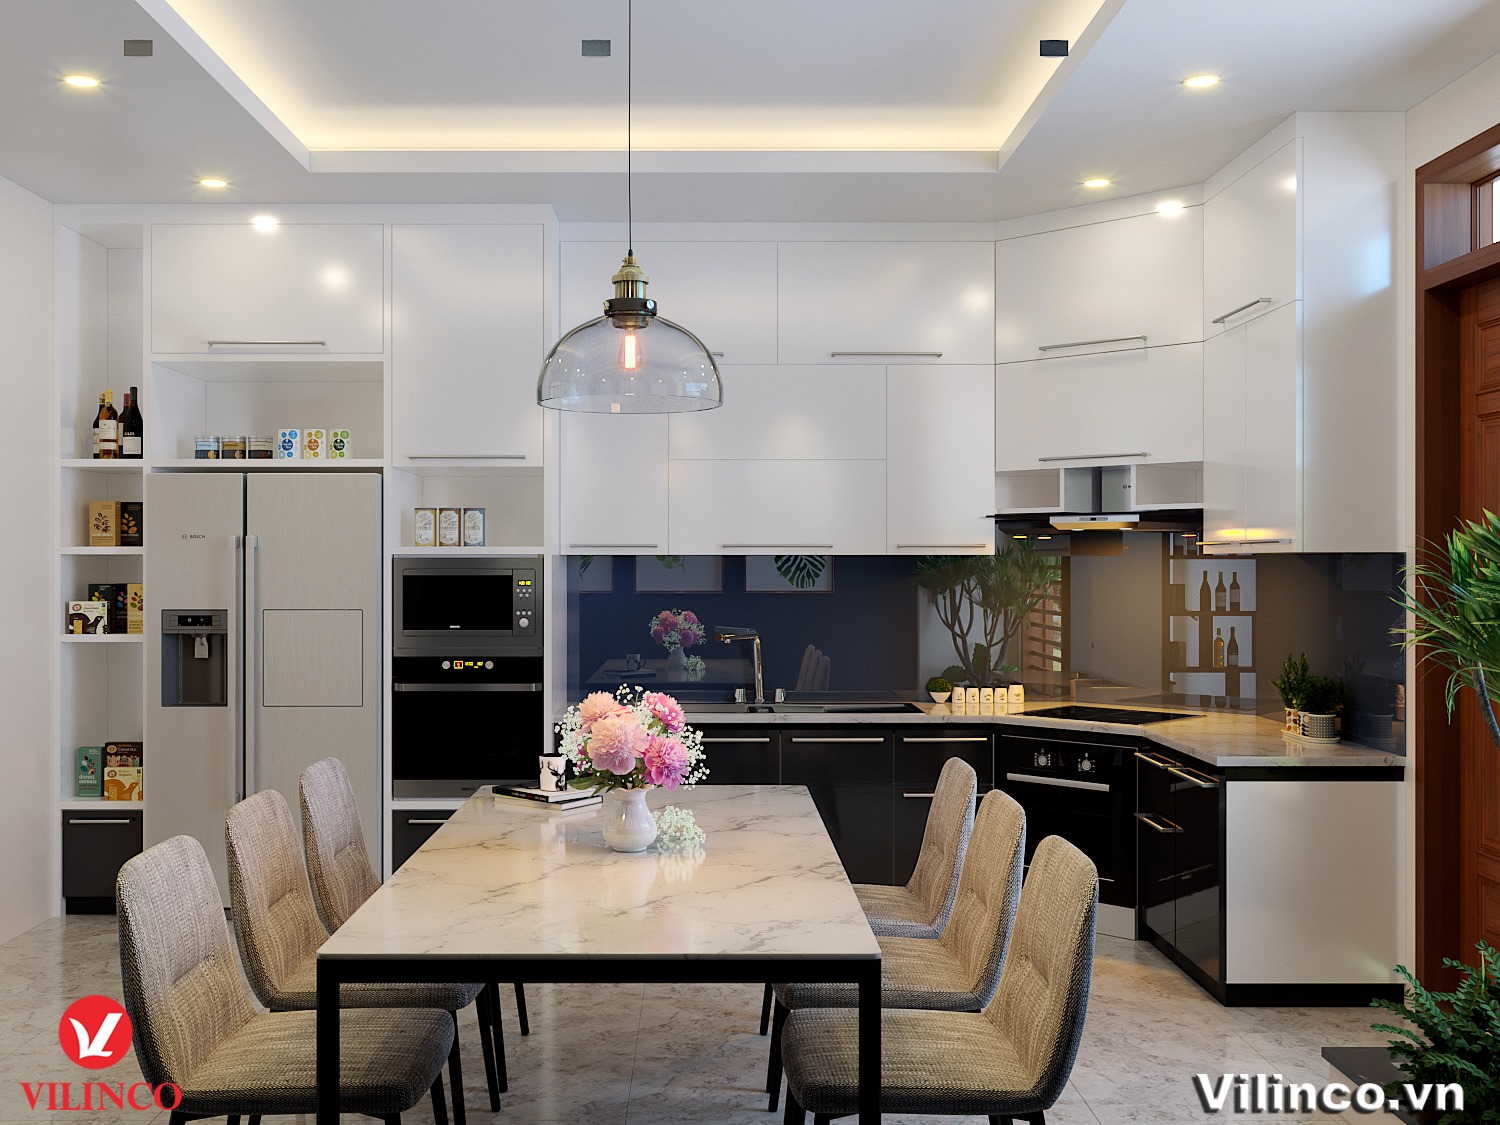 Trần thạch cao trang trí phòng bếp mang đến sự độc đáo và sang trọng cho không gian bếp của bạn. Hãy xem ngay các mẫu trần thạch cao trang trí phòng bếp mới nhất năm 2024 để có những ý tưởng thiết kế mới mẻ cho không gian bếp!